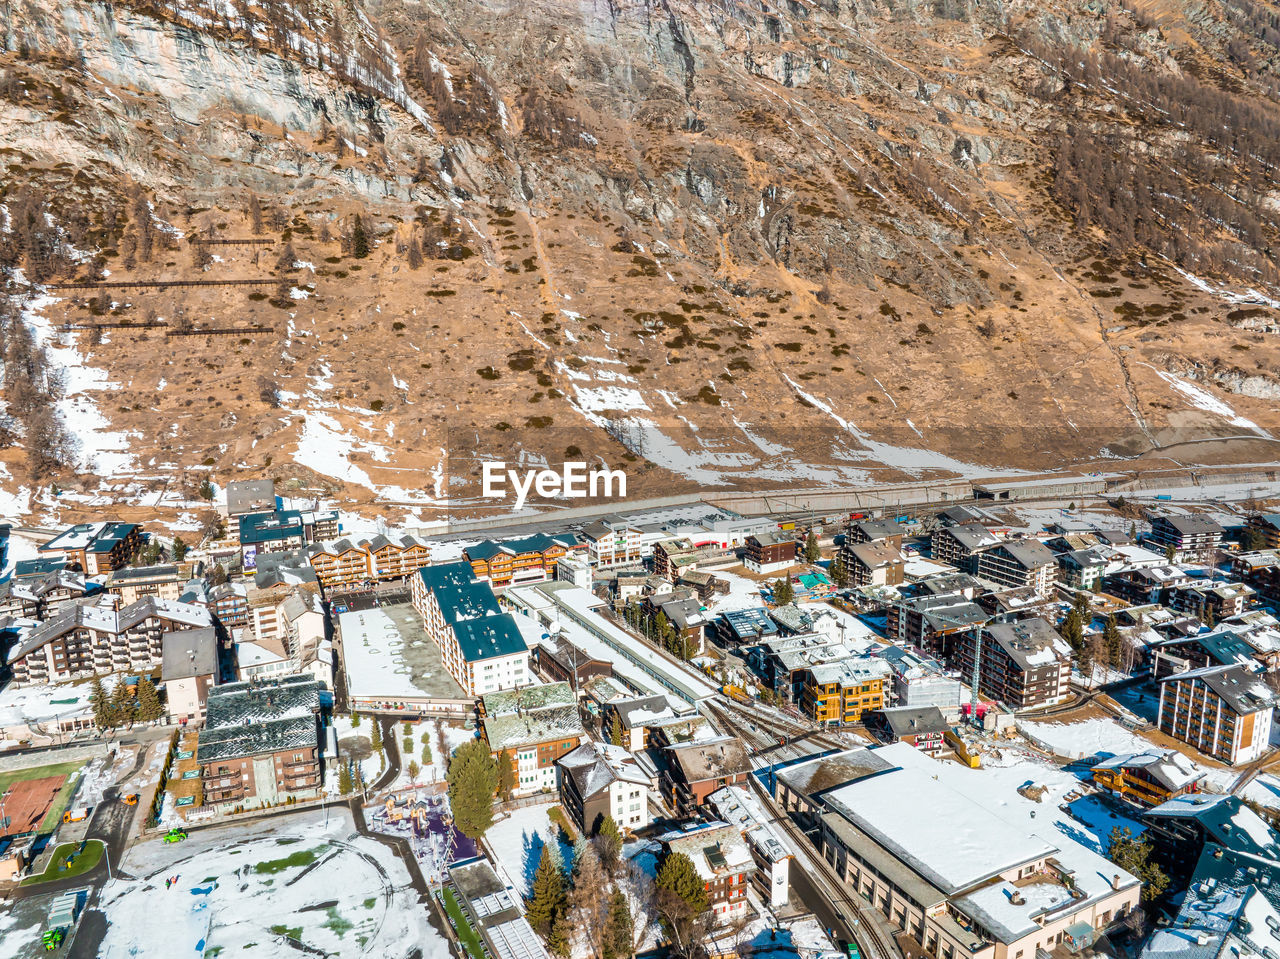 Aerial view on zermatt valley and matterhorn peak